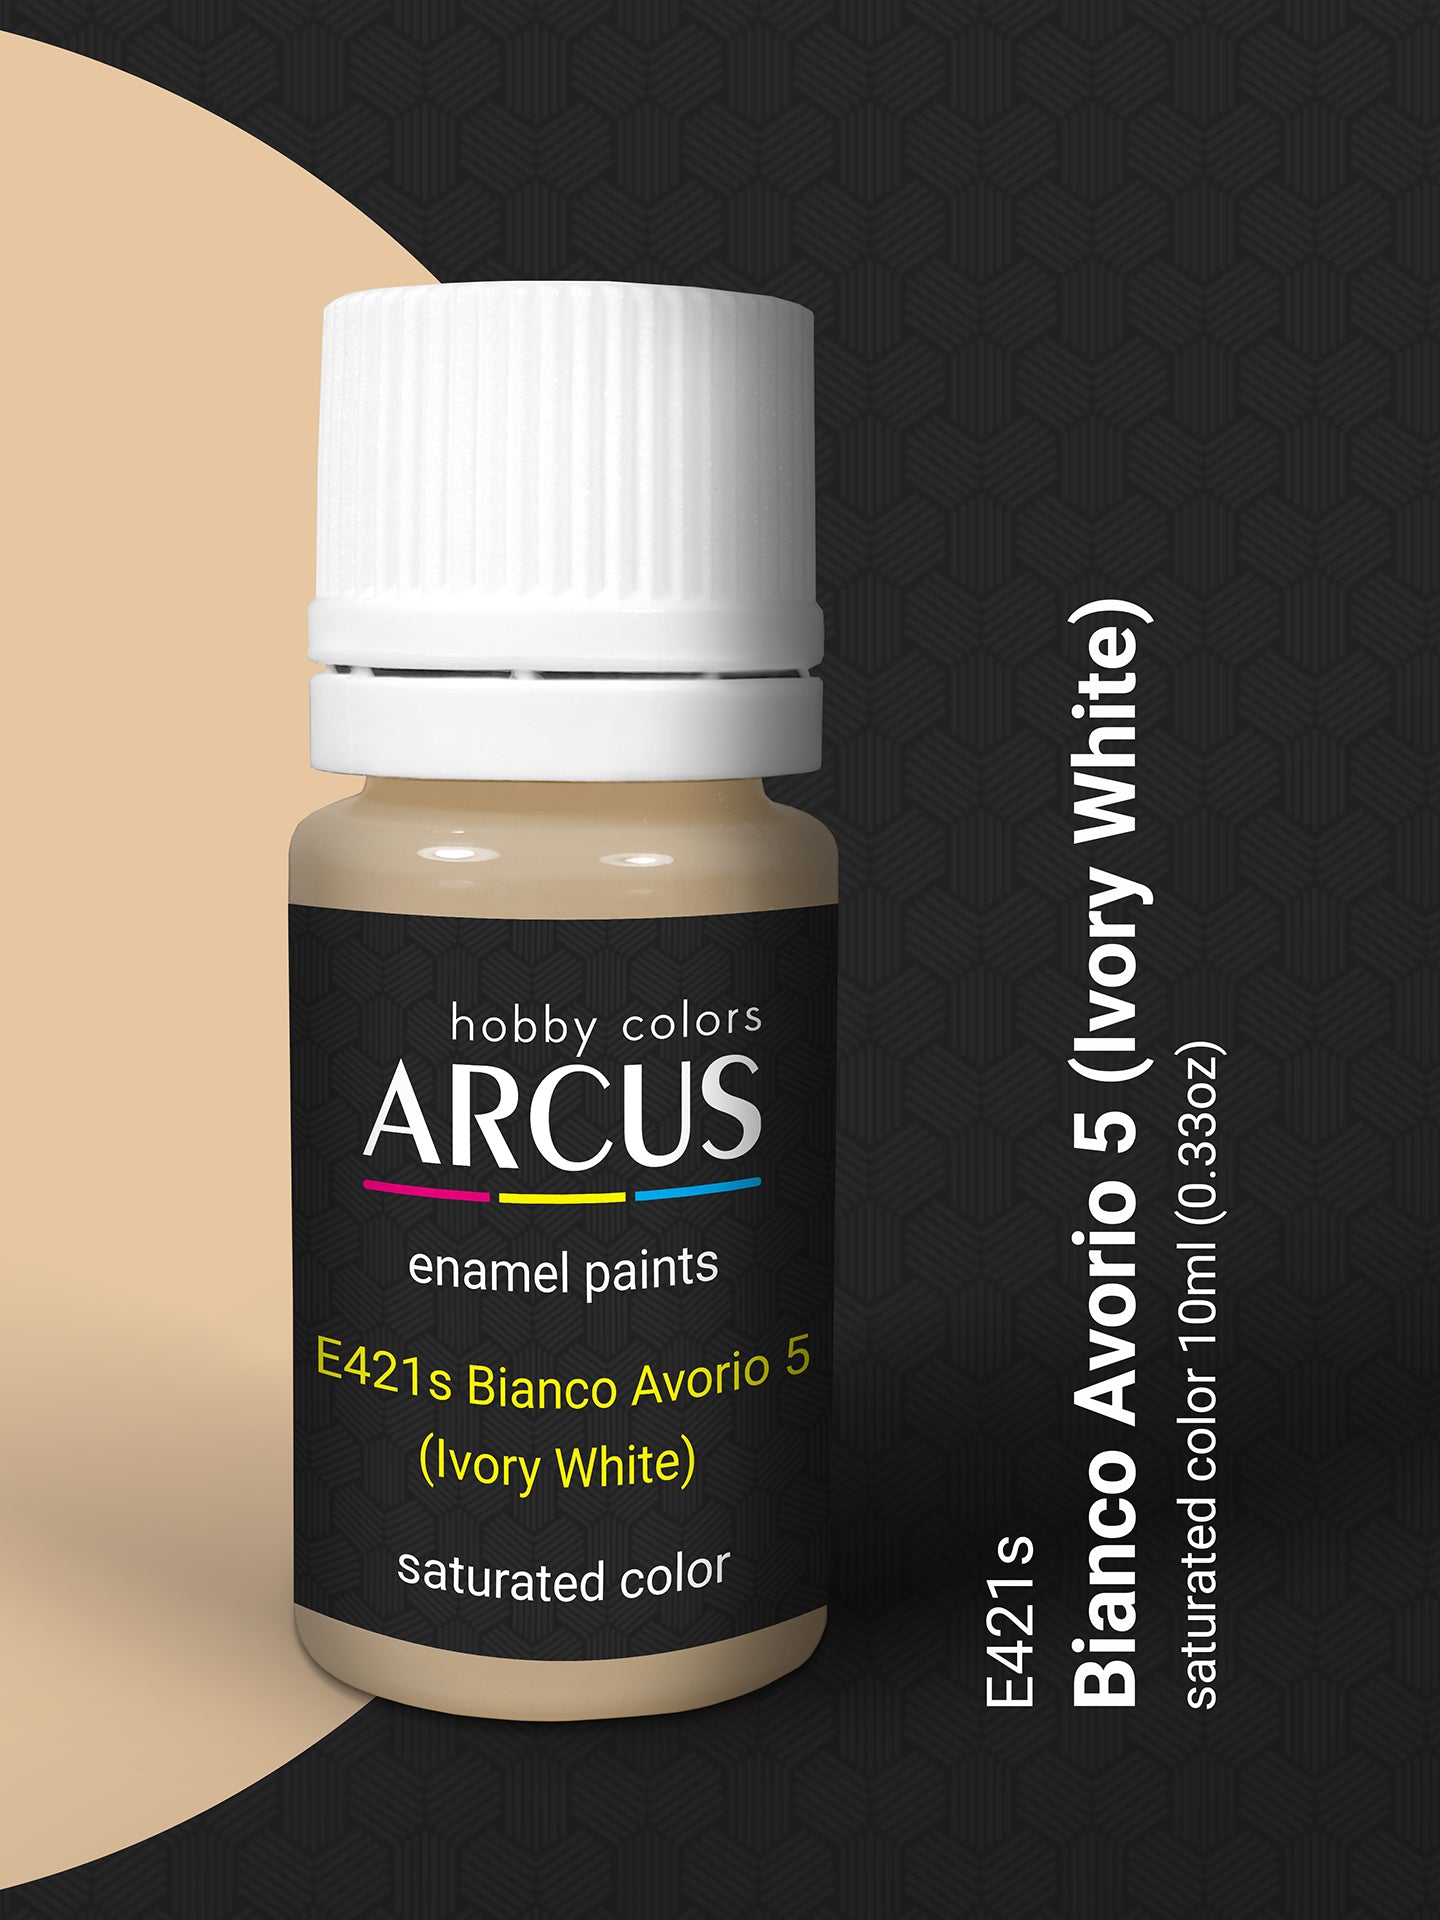 421 Bianco Avorio 5 Ivory White – Arcus Hobby Paint